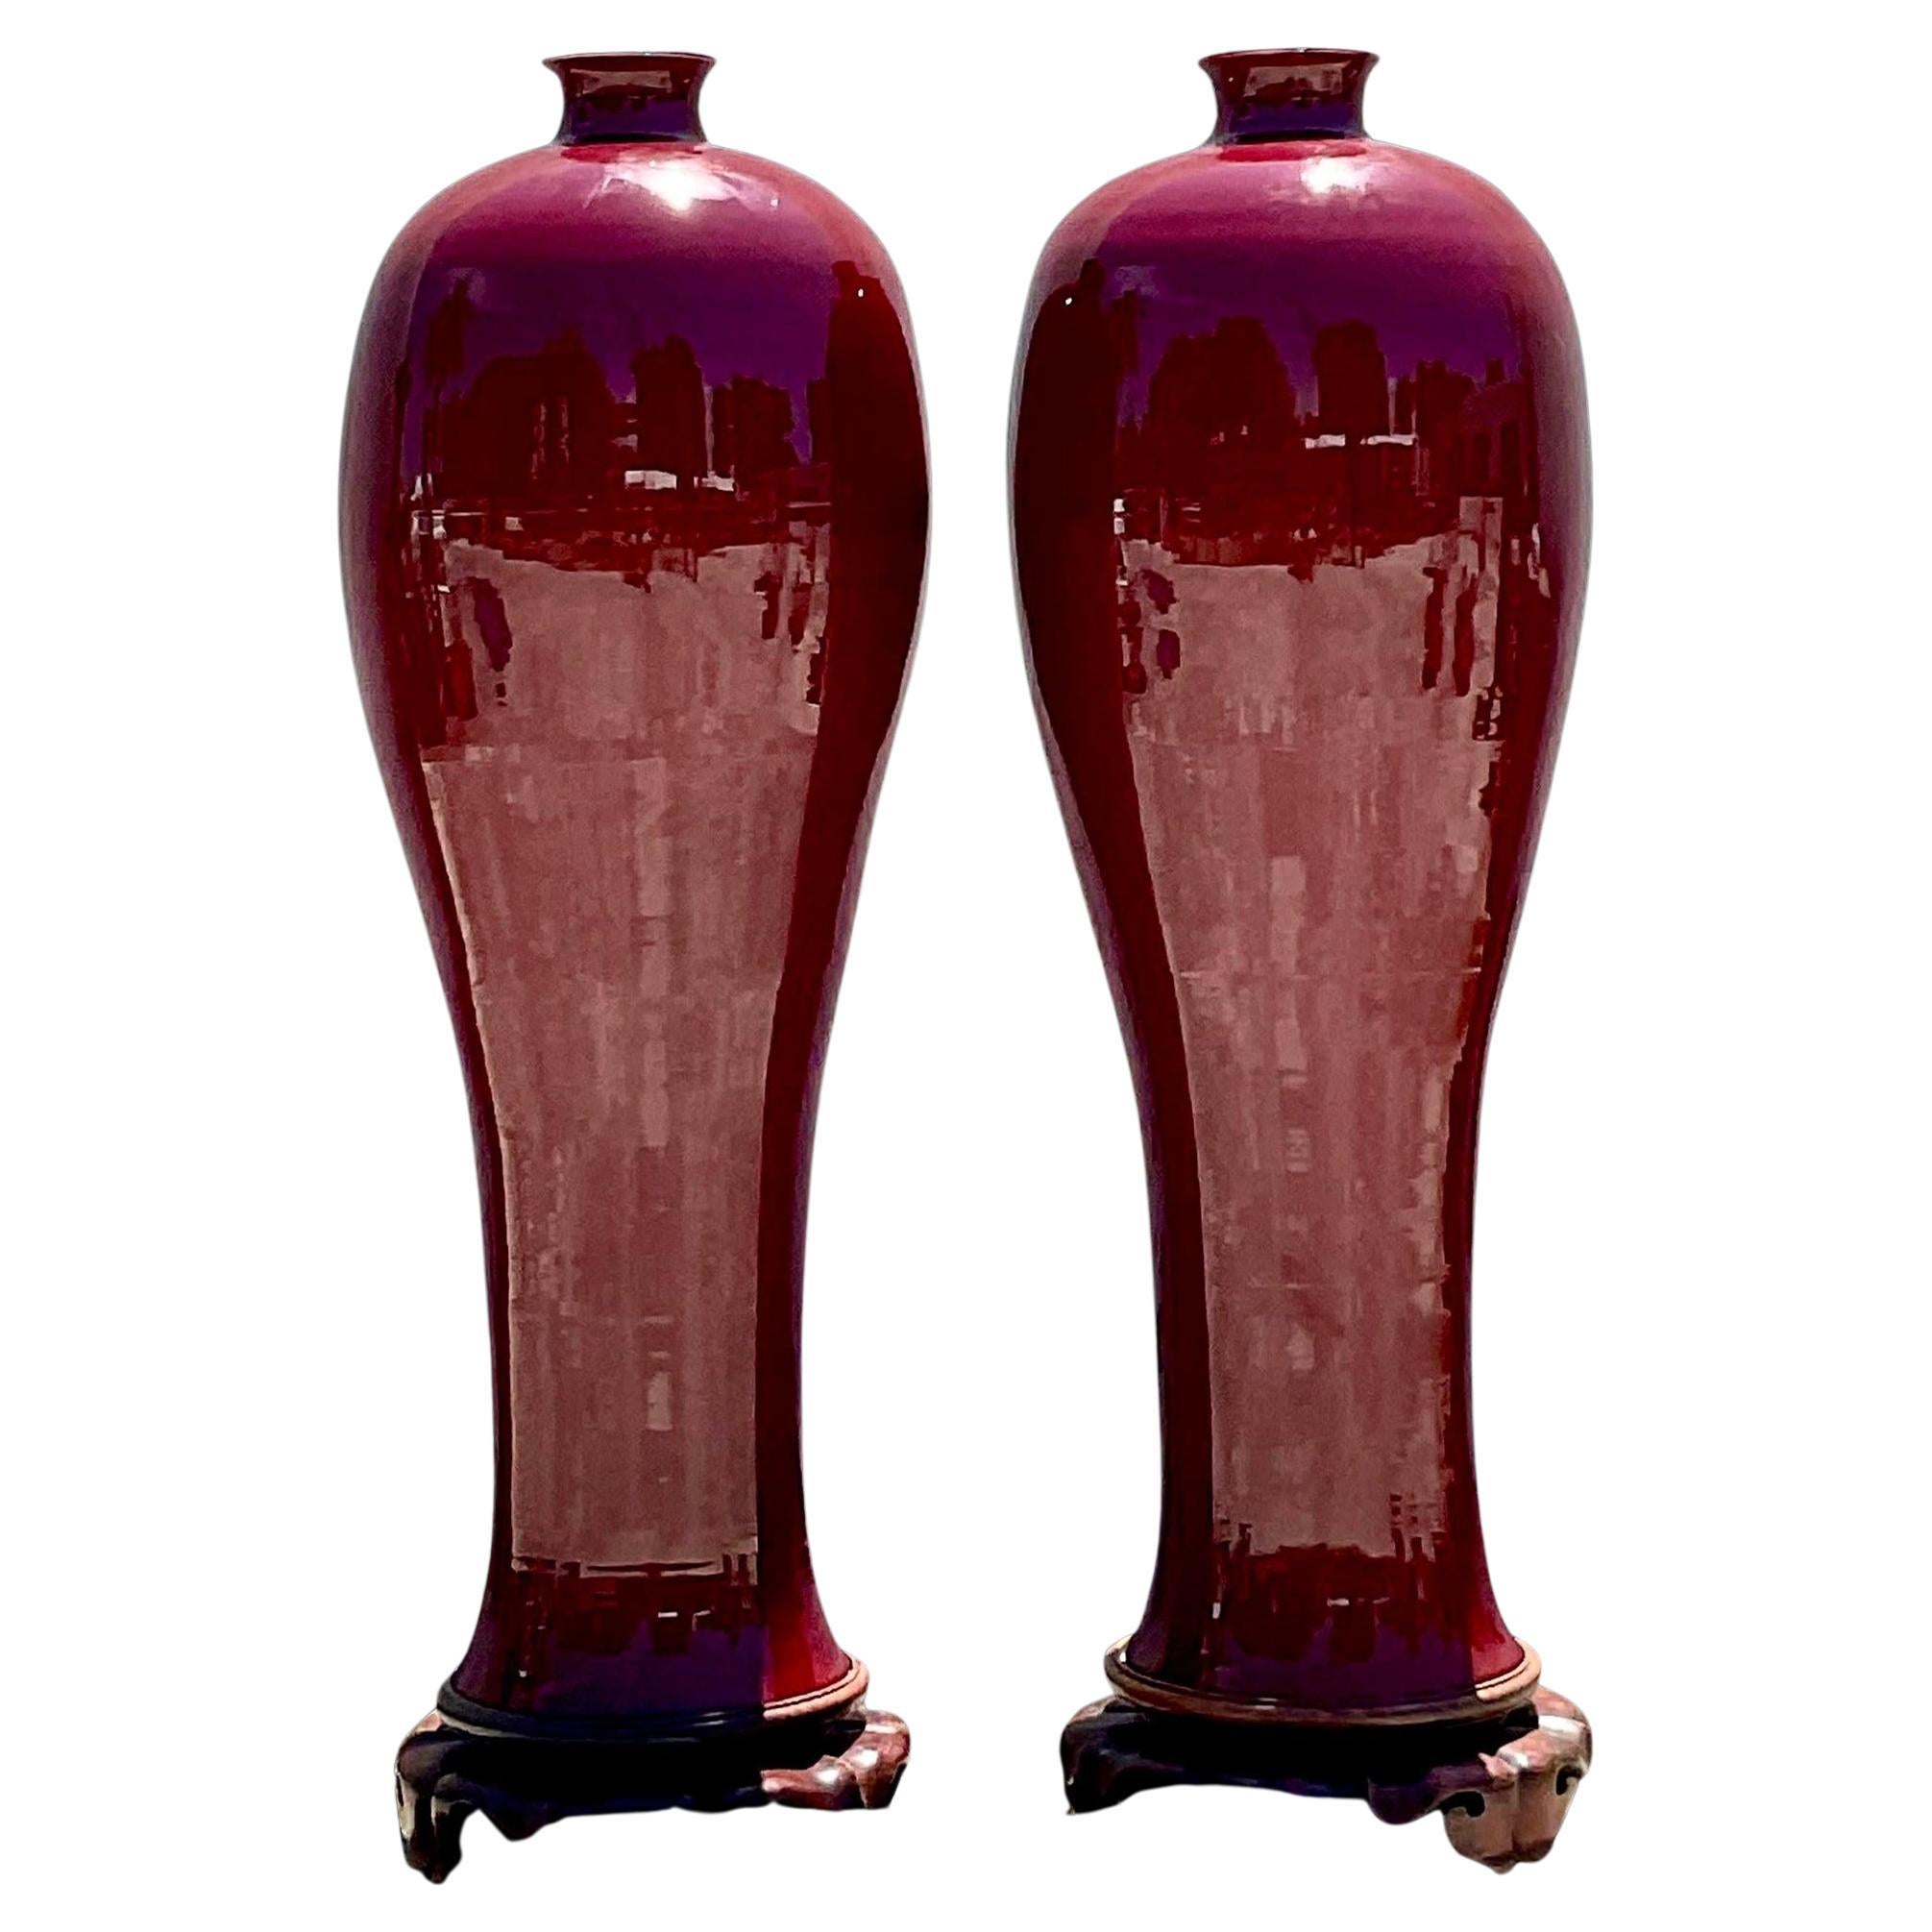 Monumentale Sang De Bouf-Vasen aus glasierter Keramik von Boho - ein Paar